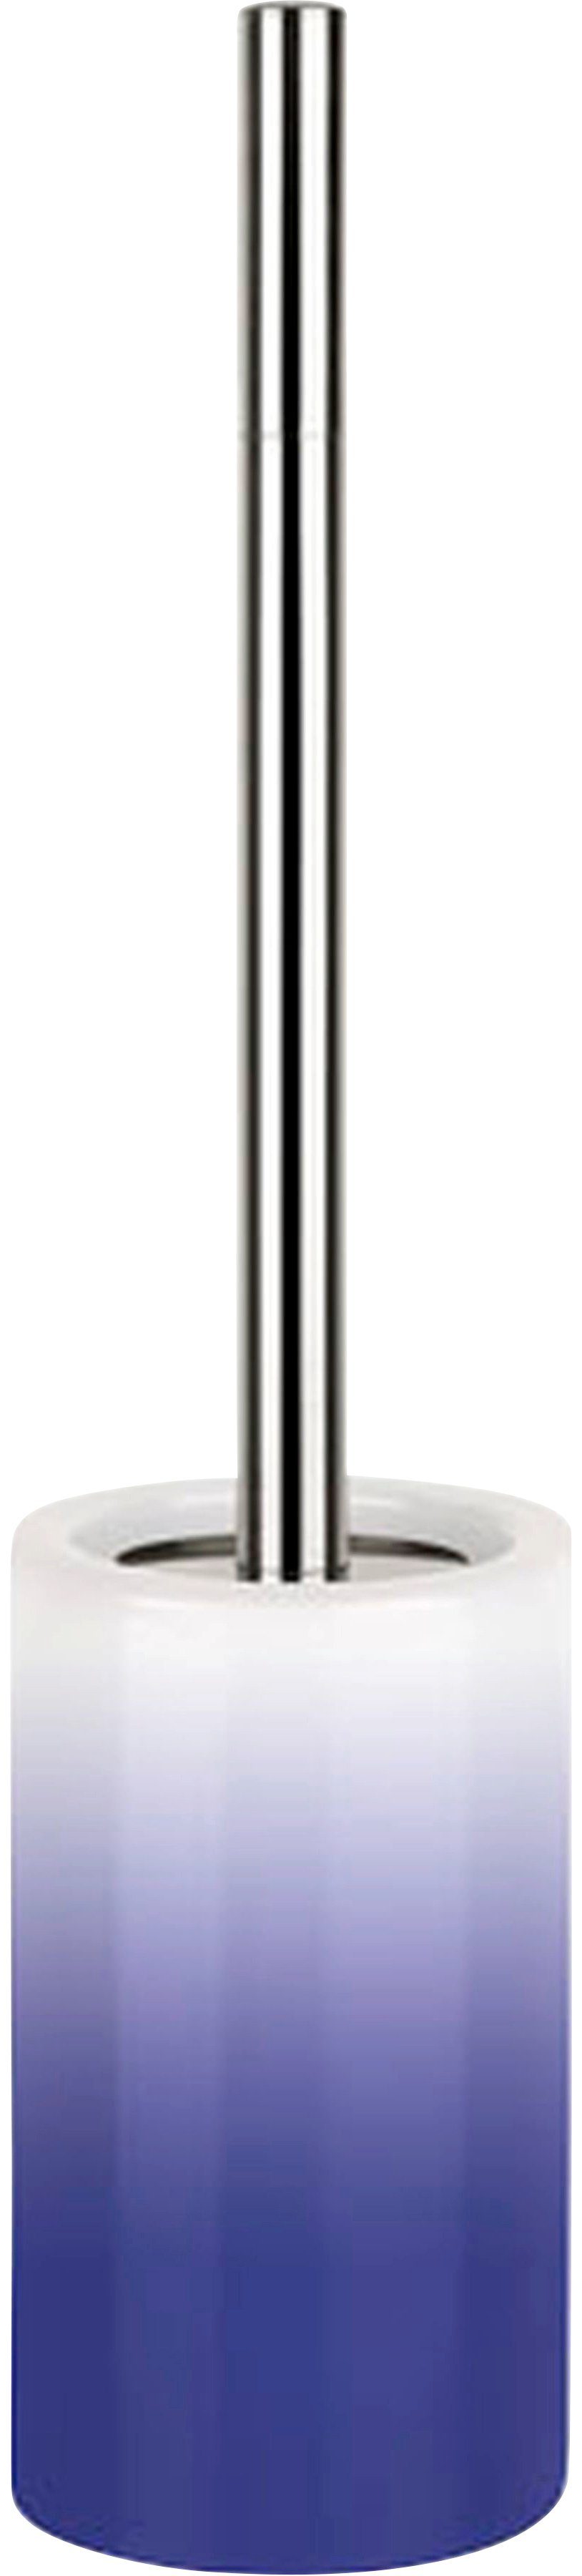 spirella WC-Garnitur TUBE Gradient, Toilettenbürste Hochwertig mit hygienischem Behälter navy